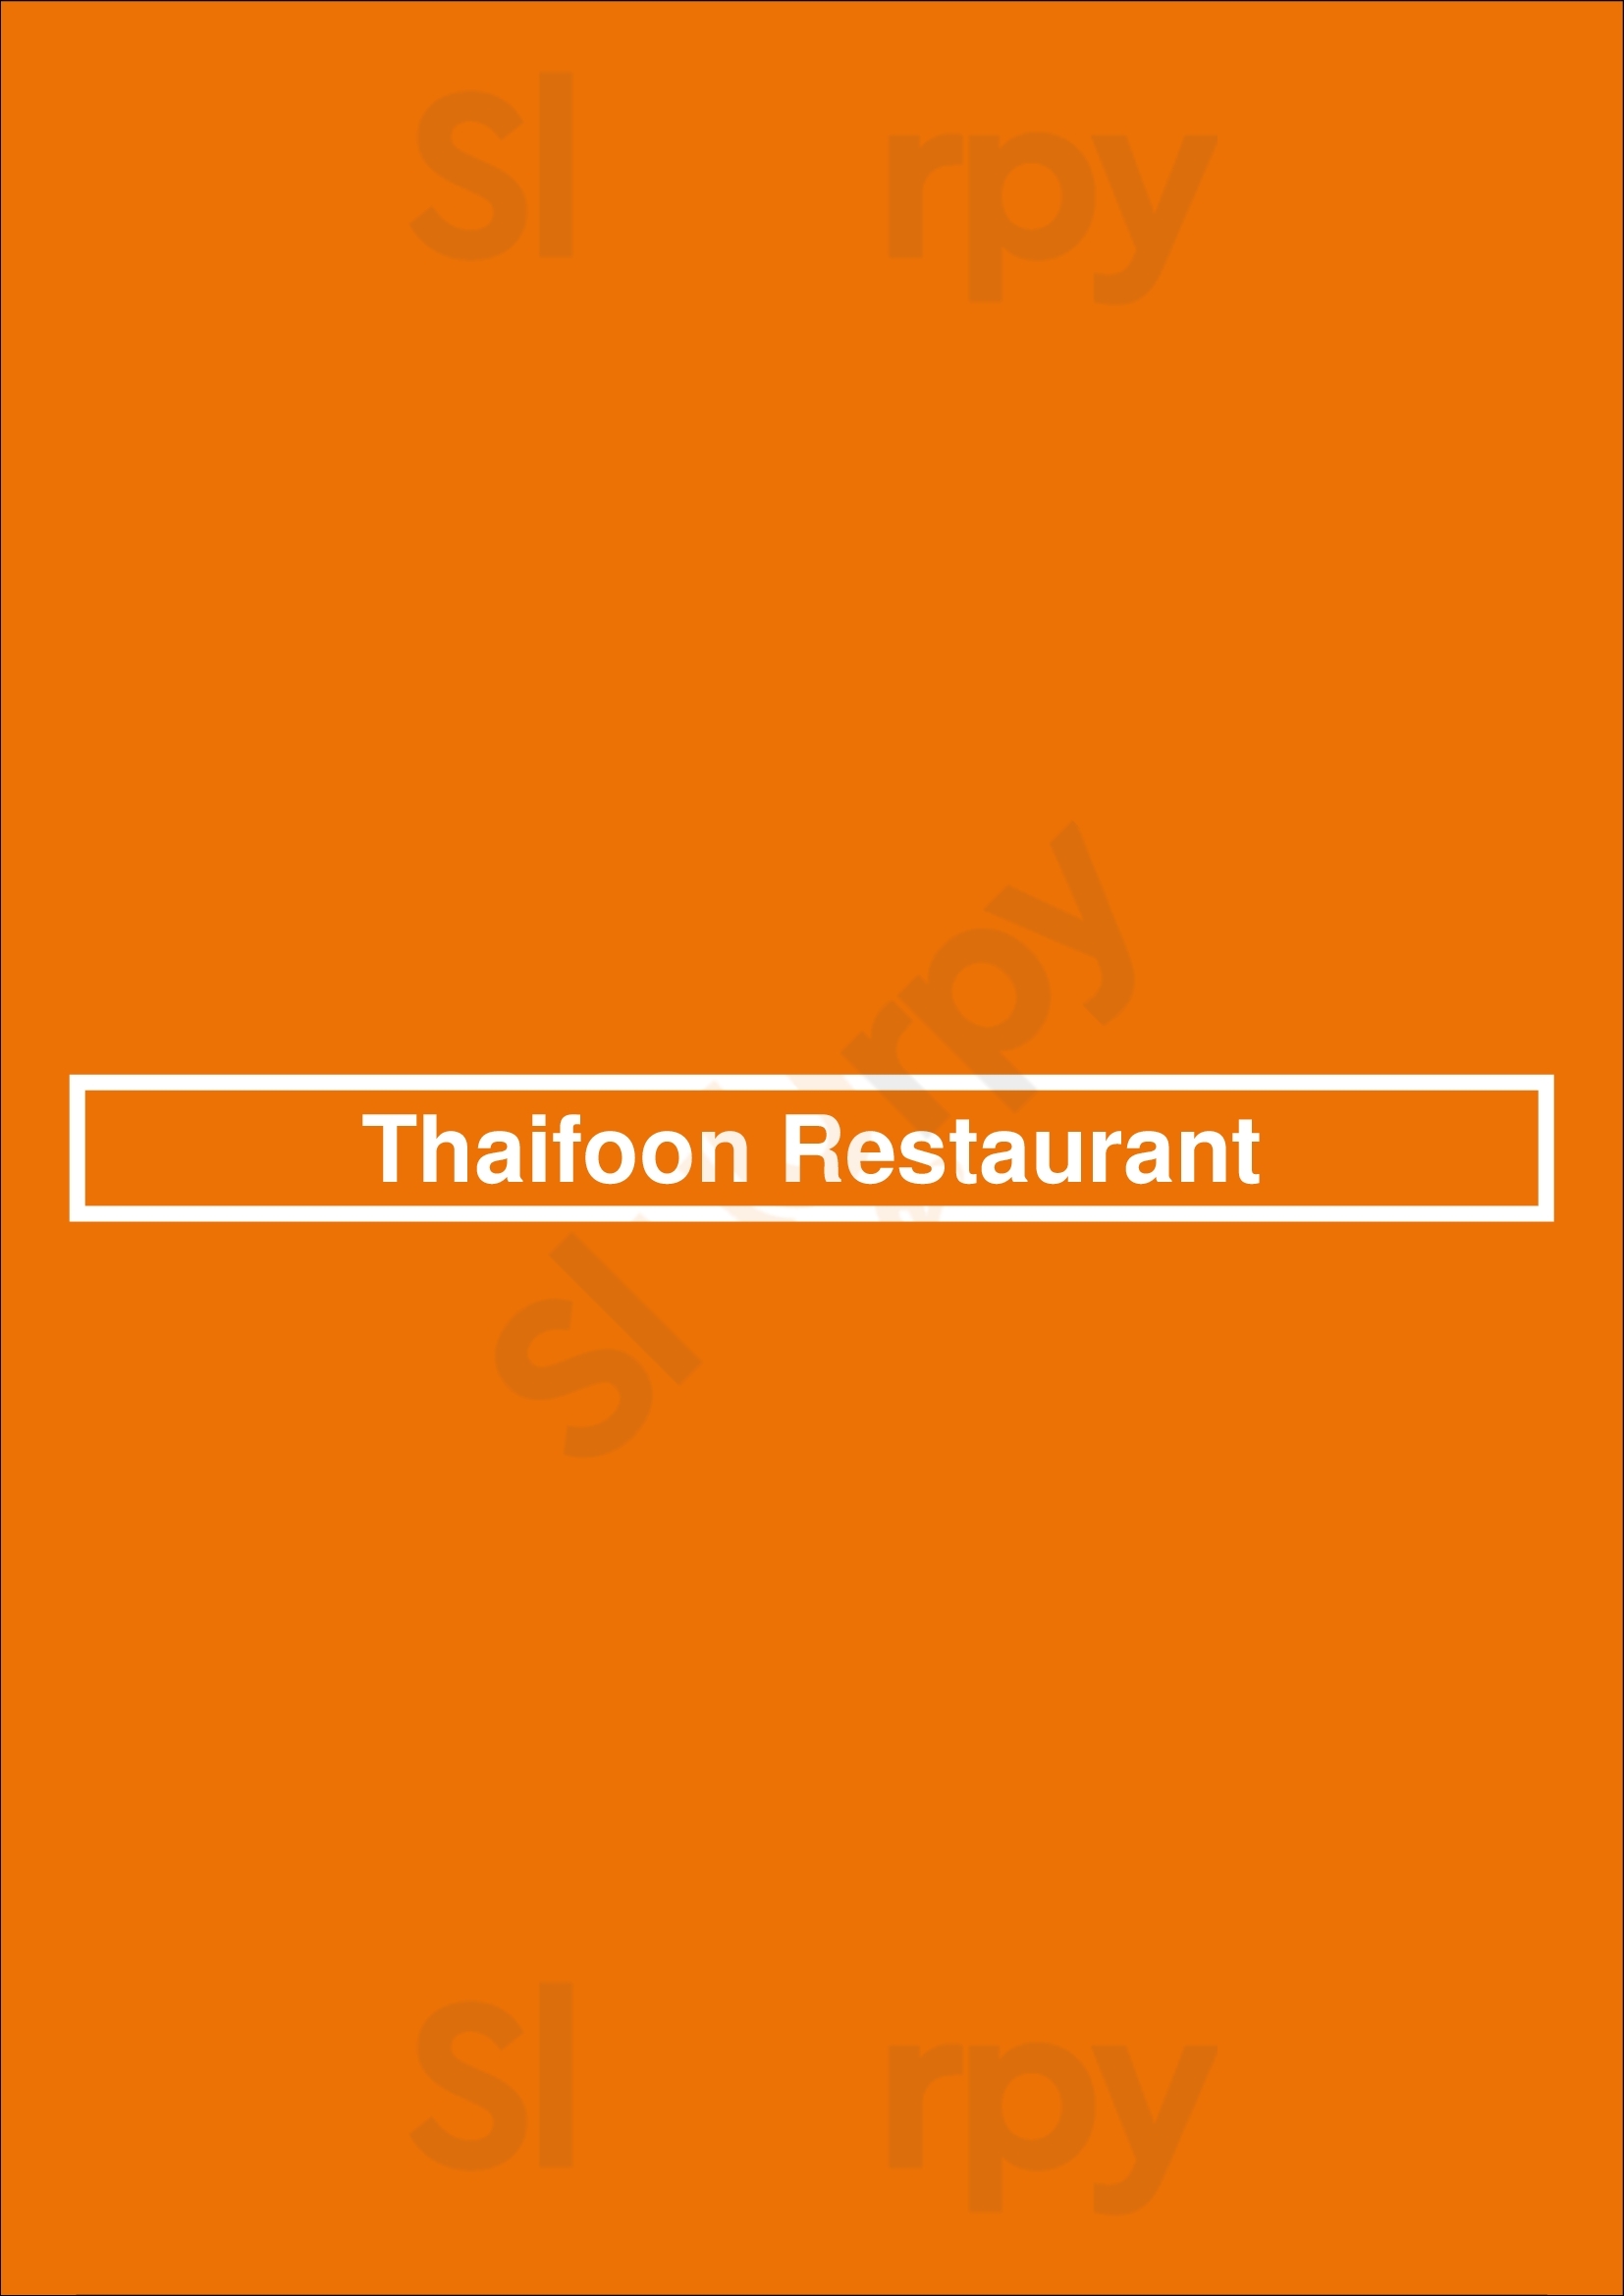 Thaifoon Restaurant London Menu - 1